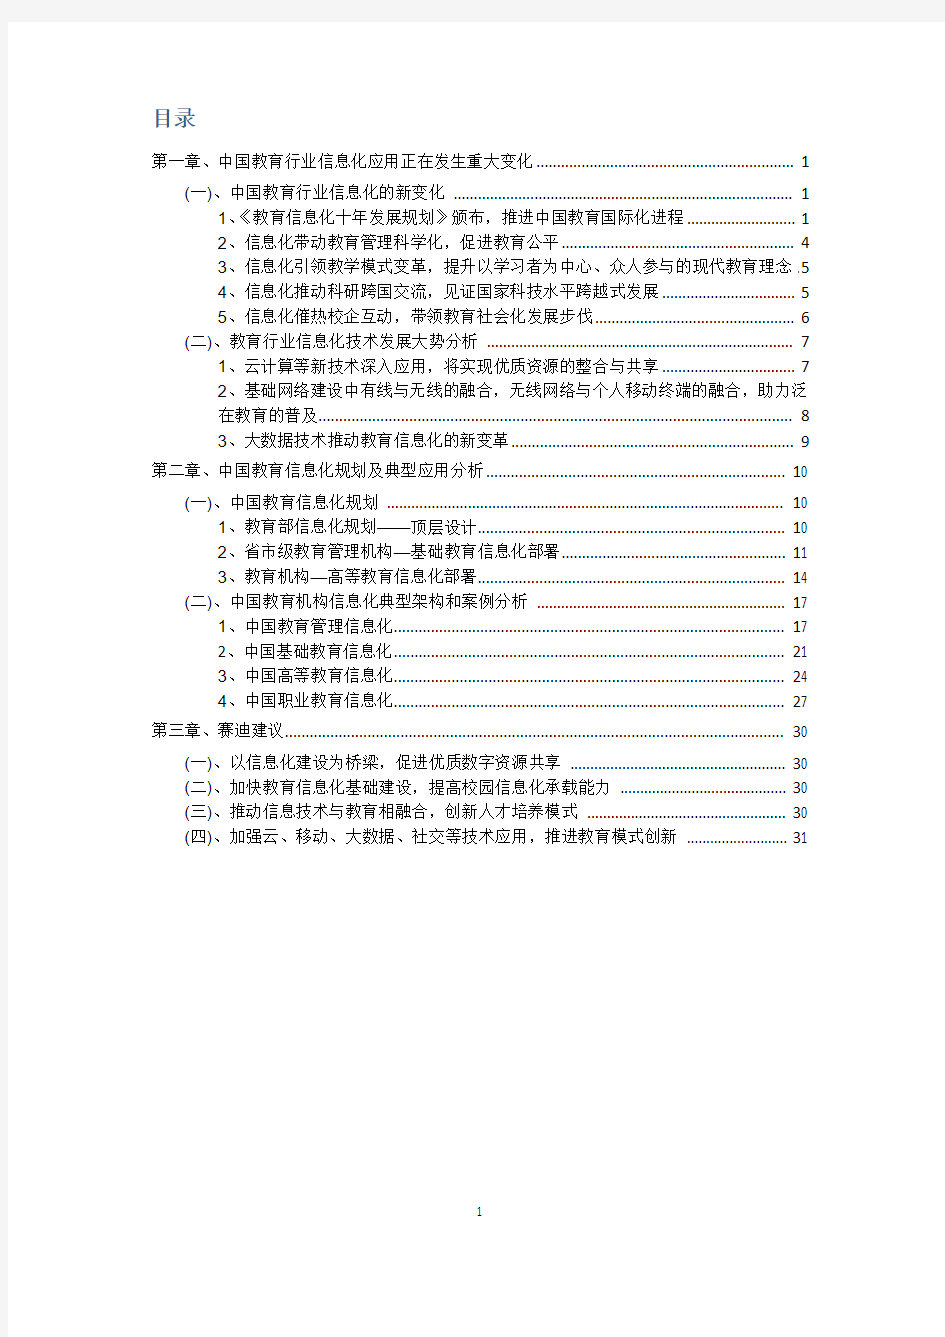 中国教育行业信息化发展白皮书